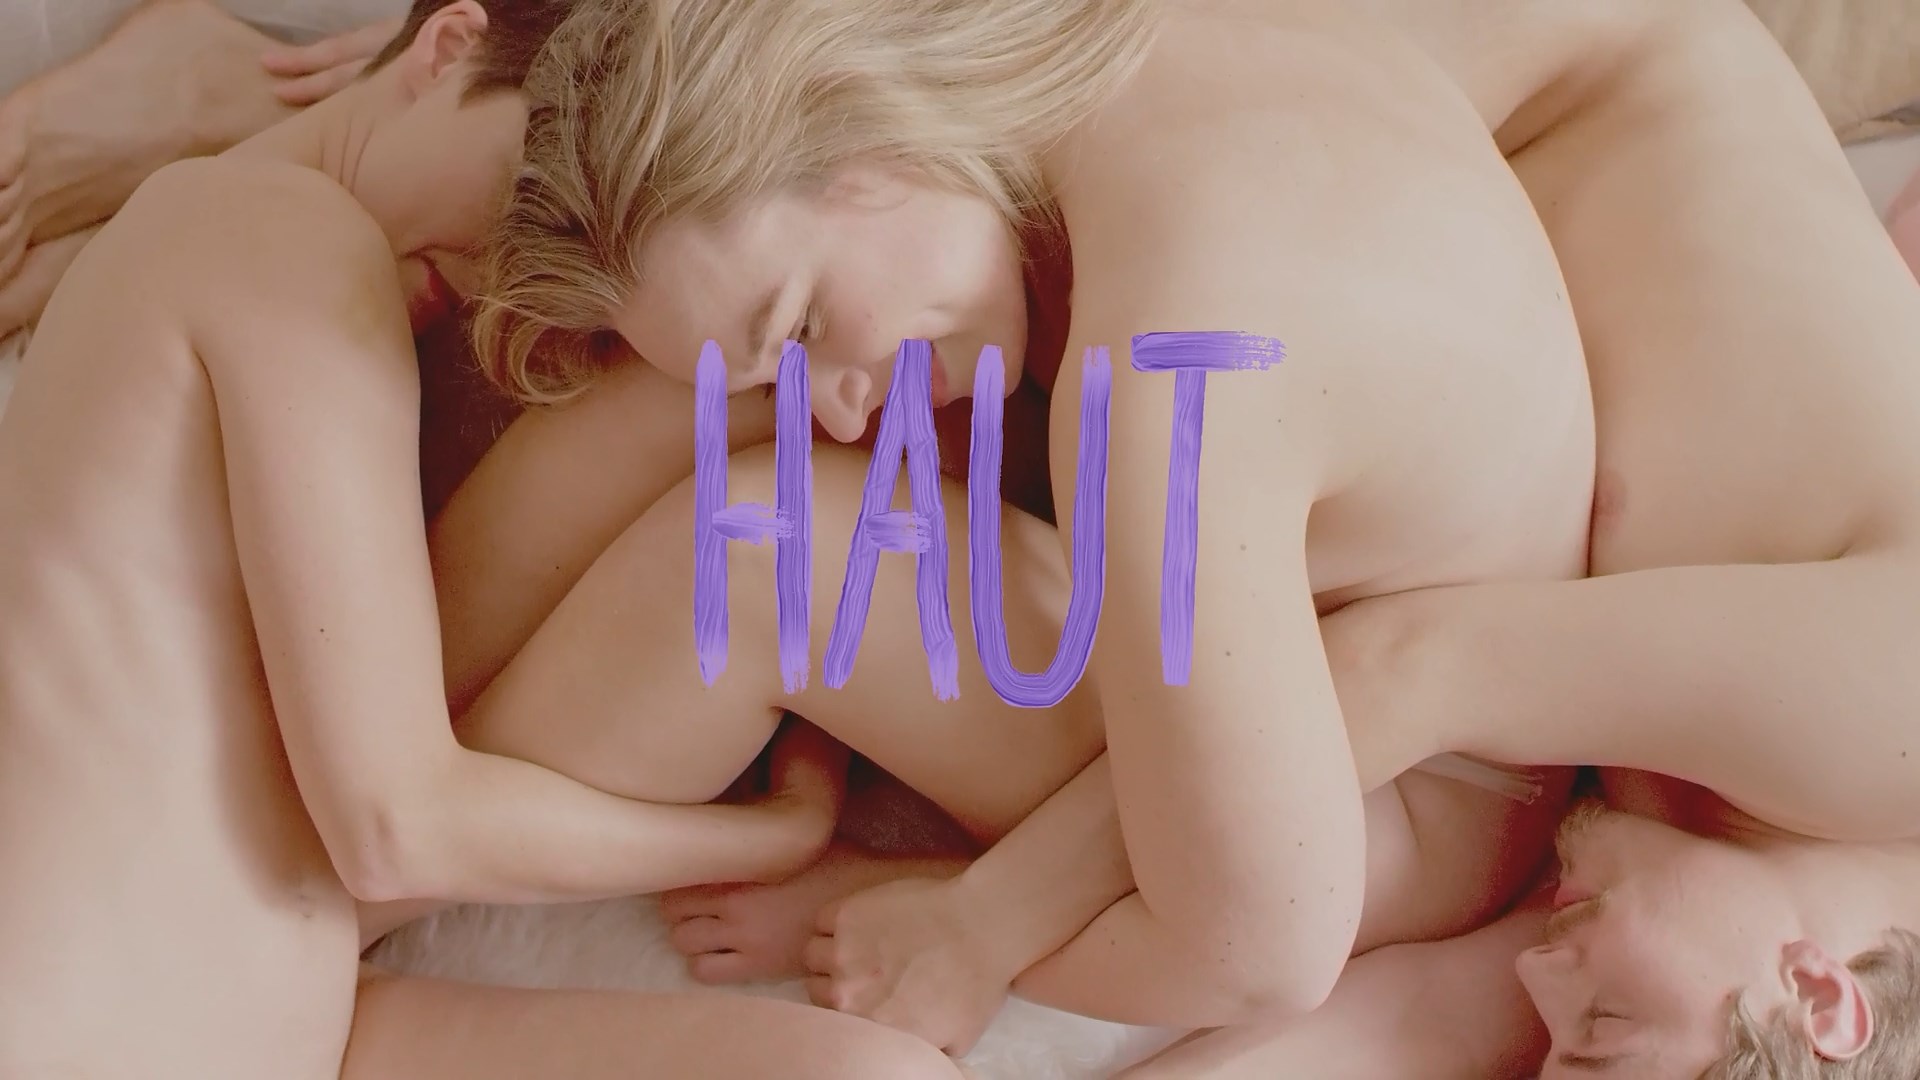 2019hdxxx - Watch Online - Nina Siewert, Mirjam Birkl, Lisa-Marie Hahn - Haut (2019) HD  1080p